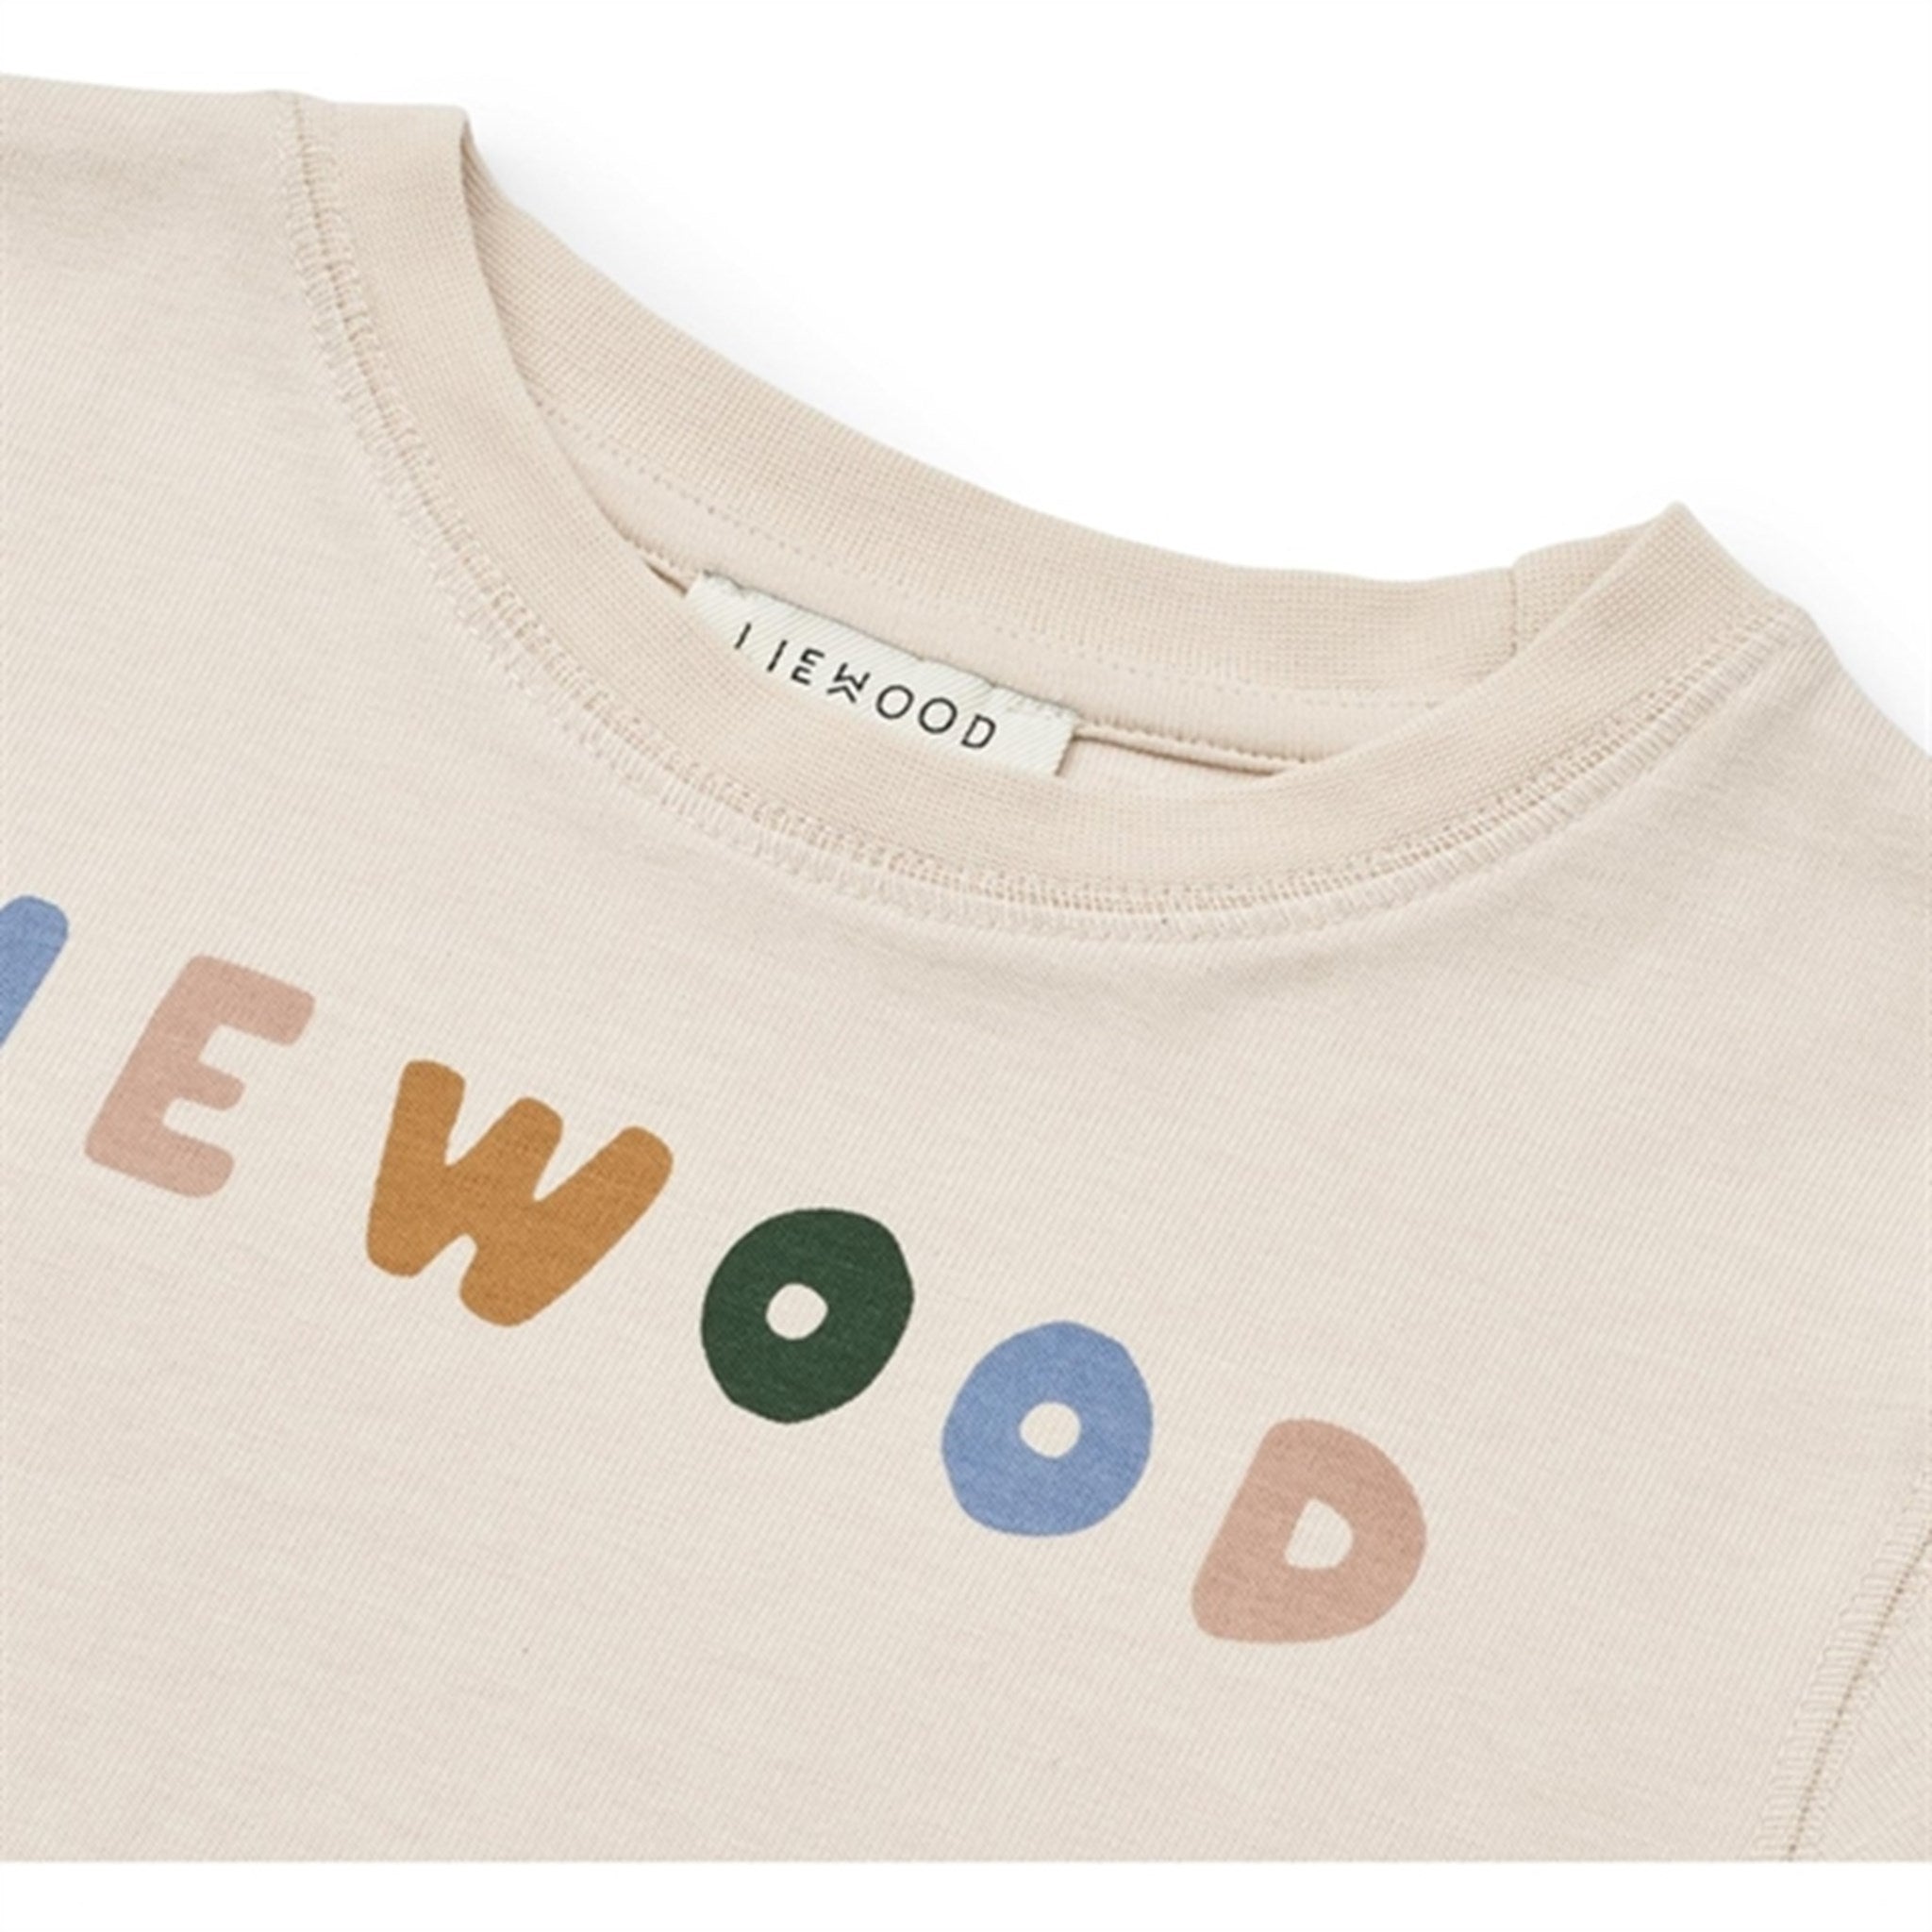 Liewood Liewood/Sandy Sixten Placement T-shirt 3